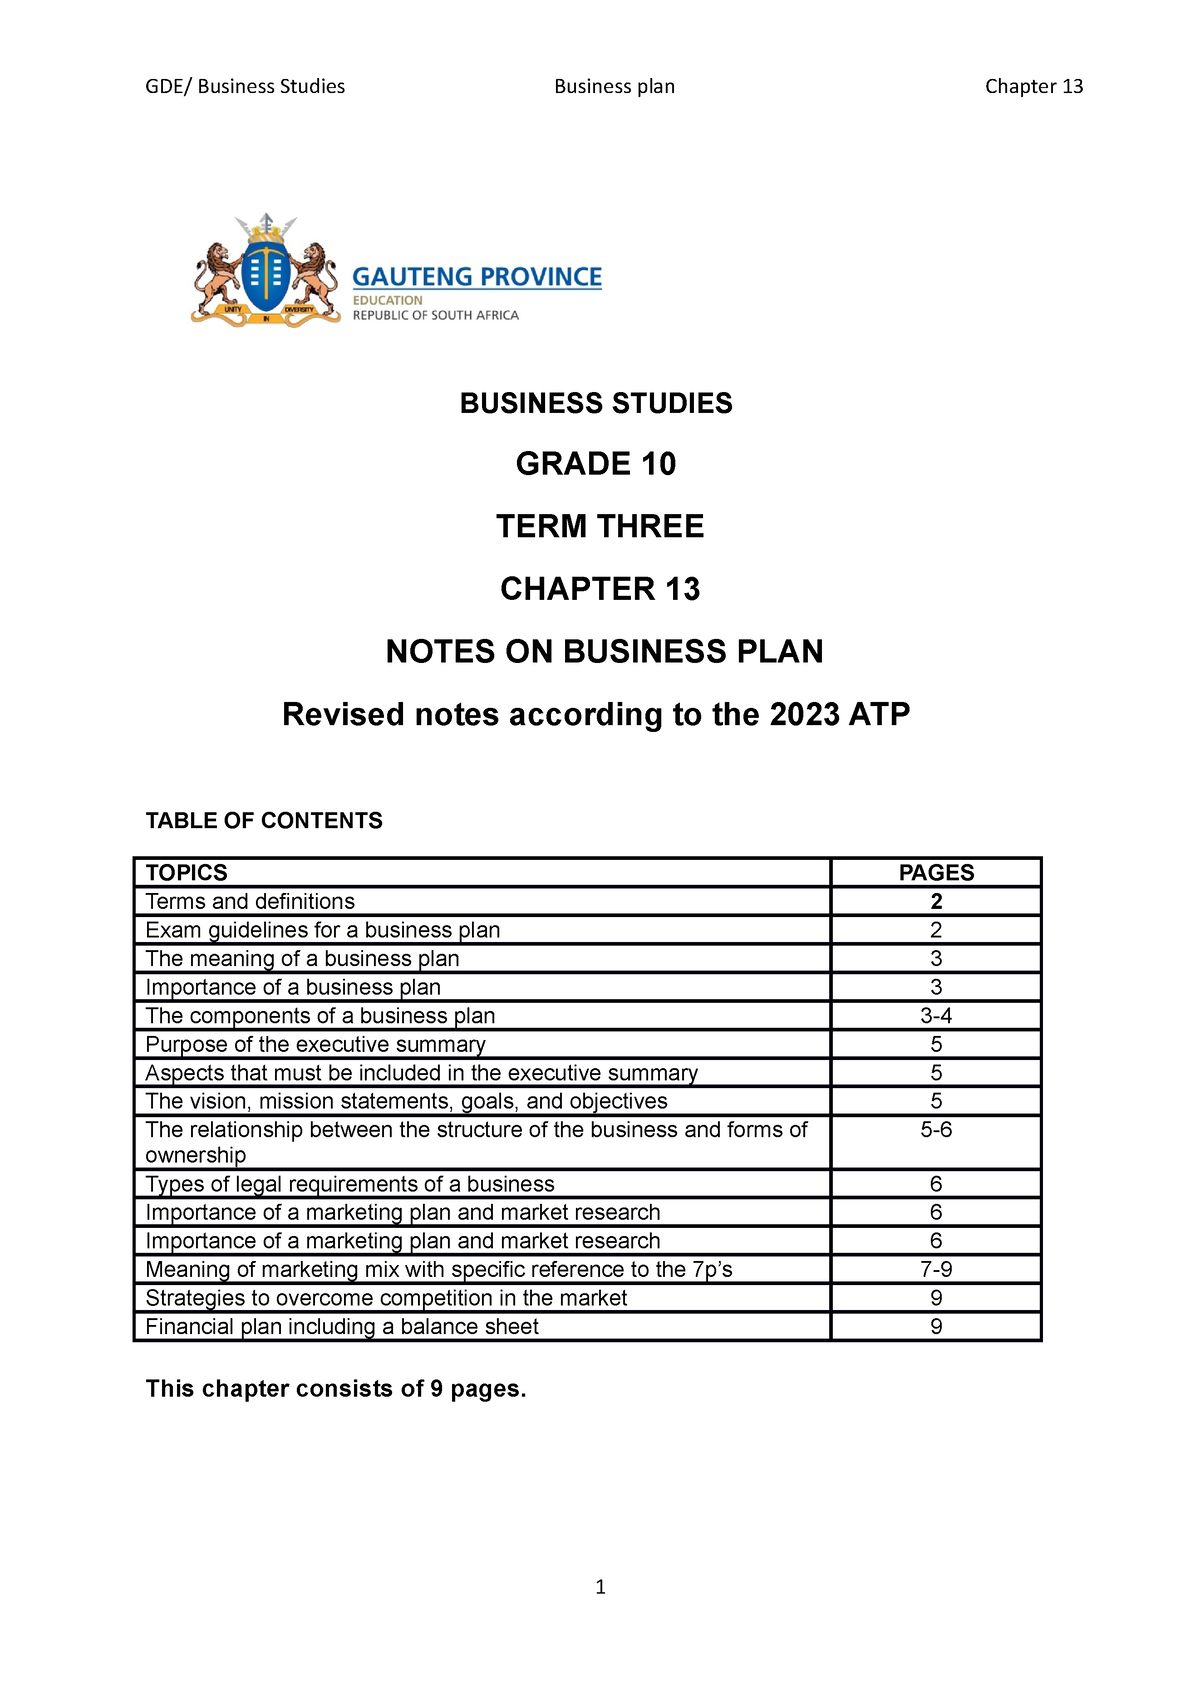 business studies business plan grade 10